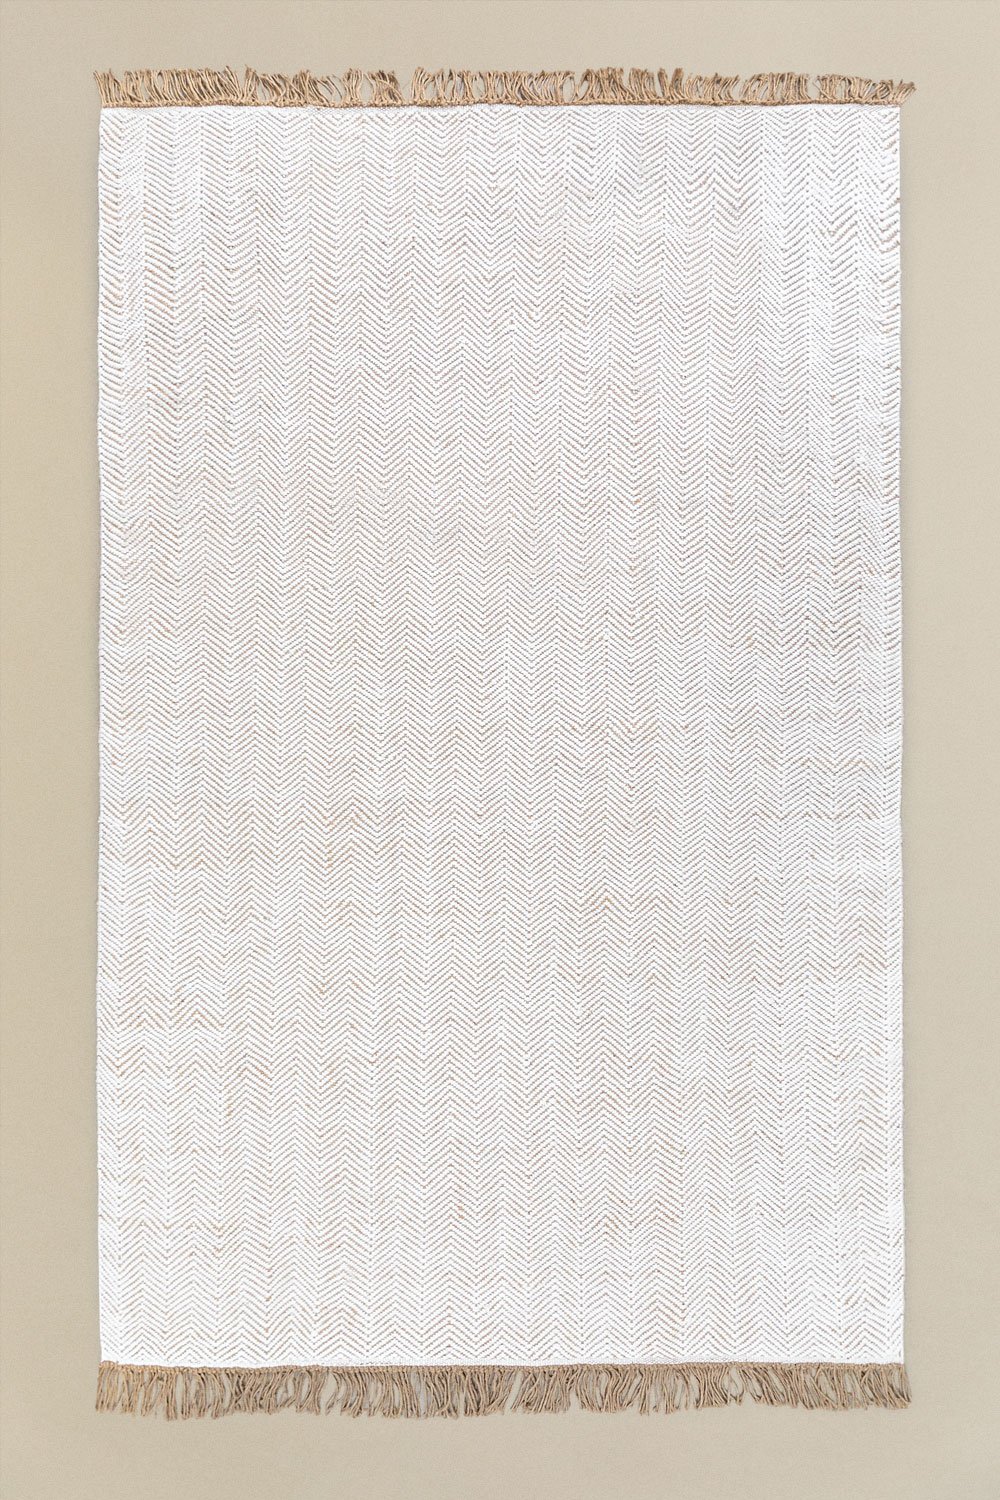 Buitenkleed (340x200 cm) Maxandra, galerij beeld 1